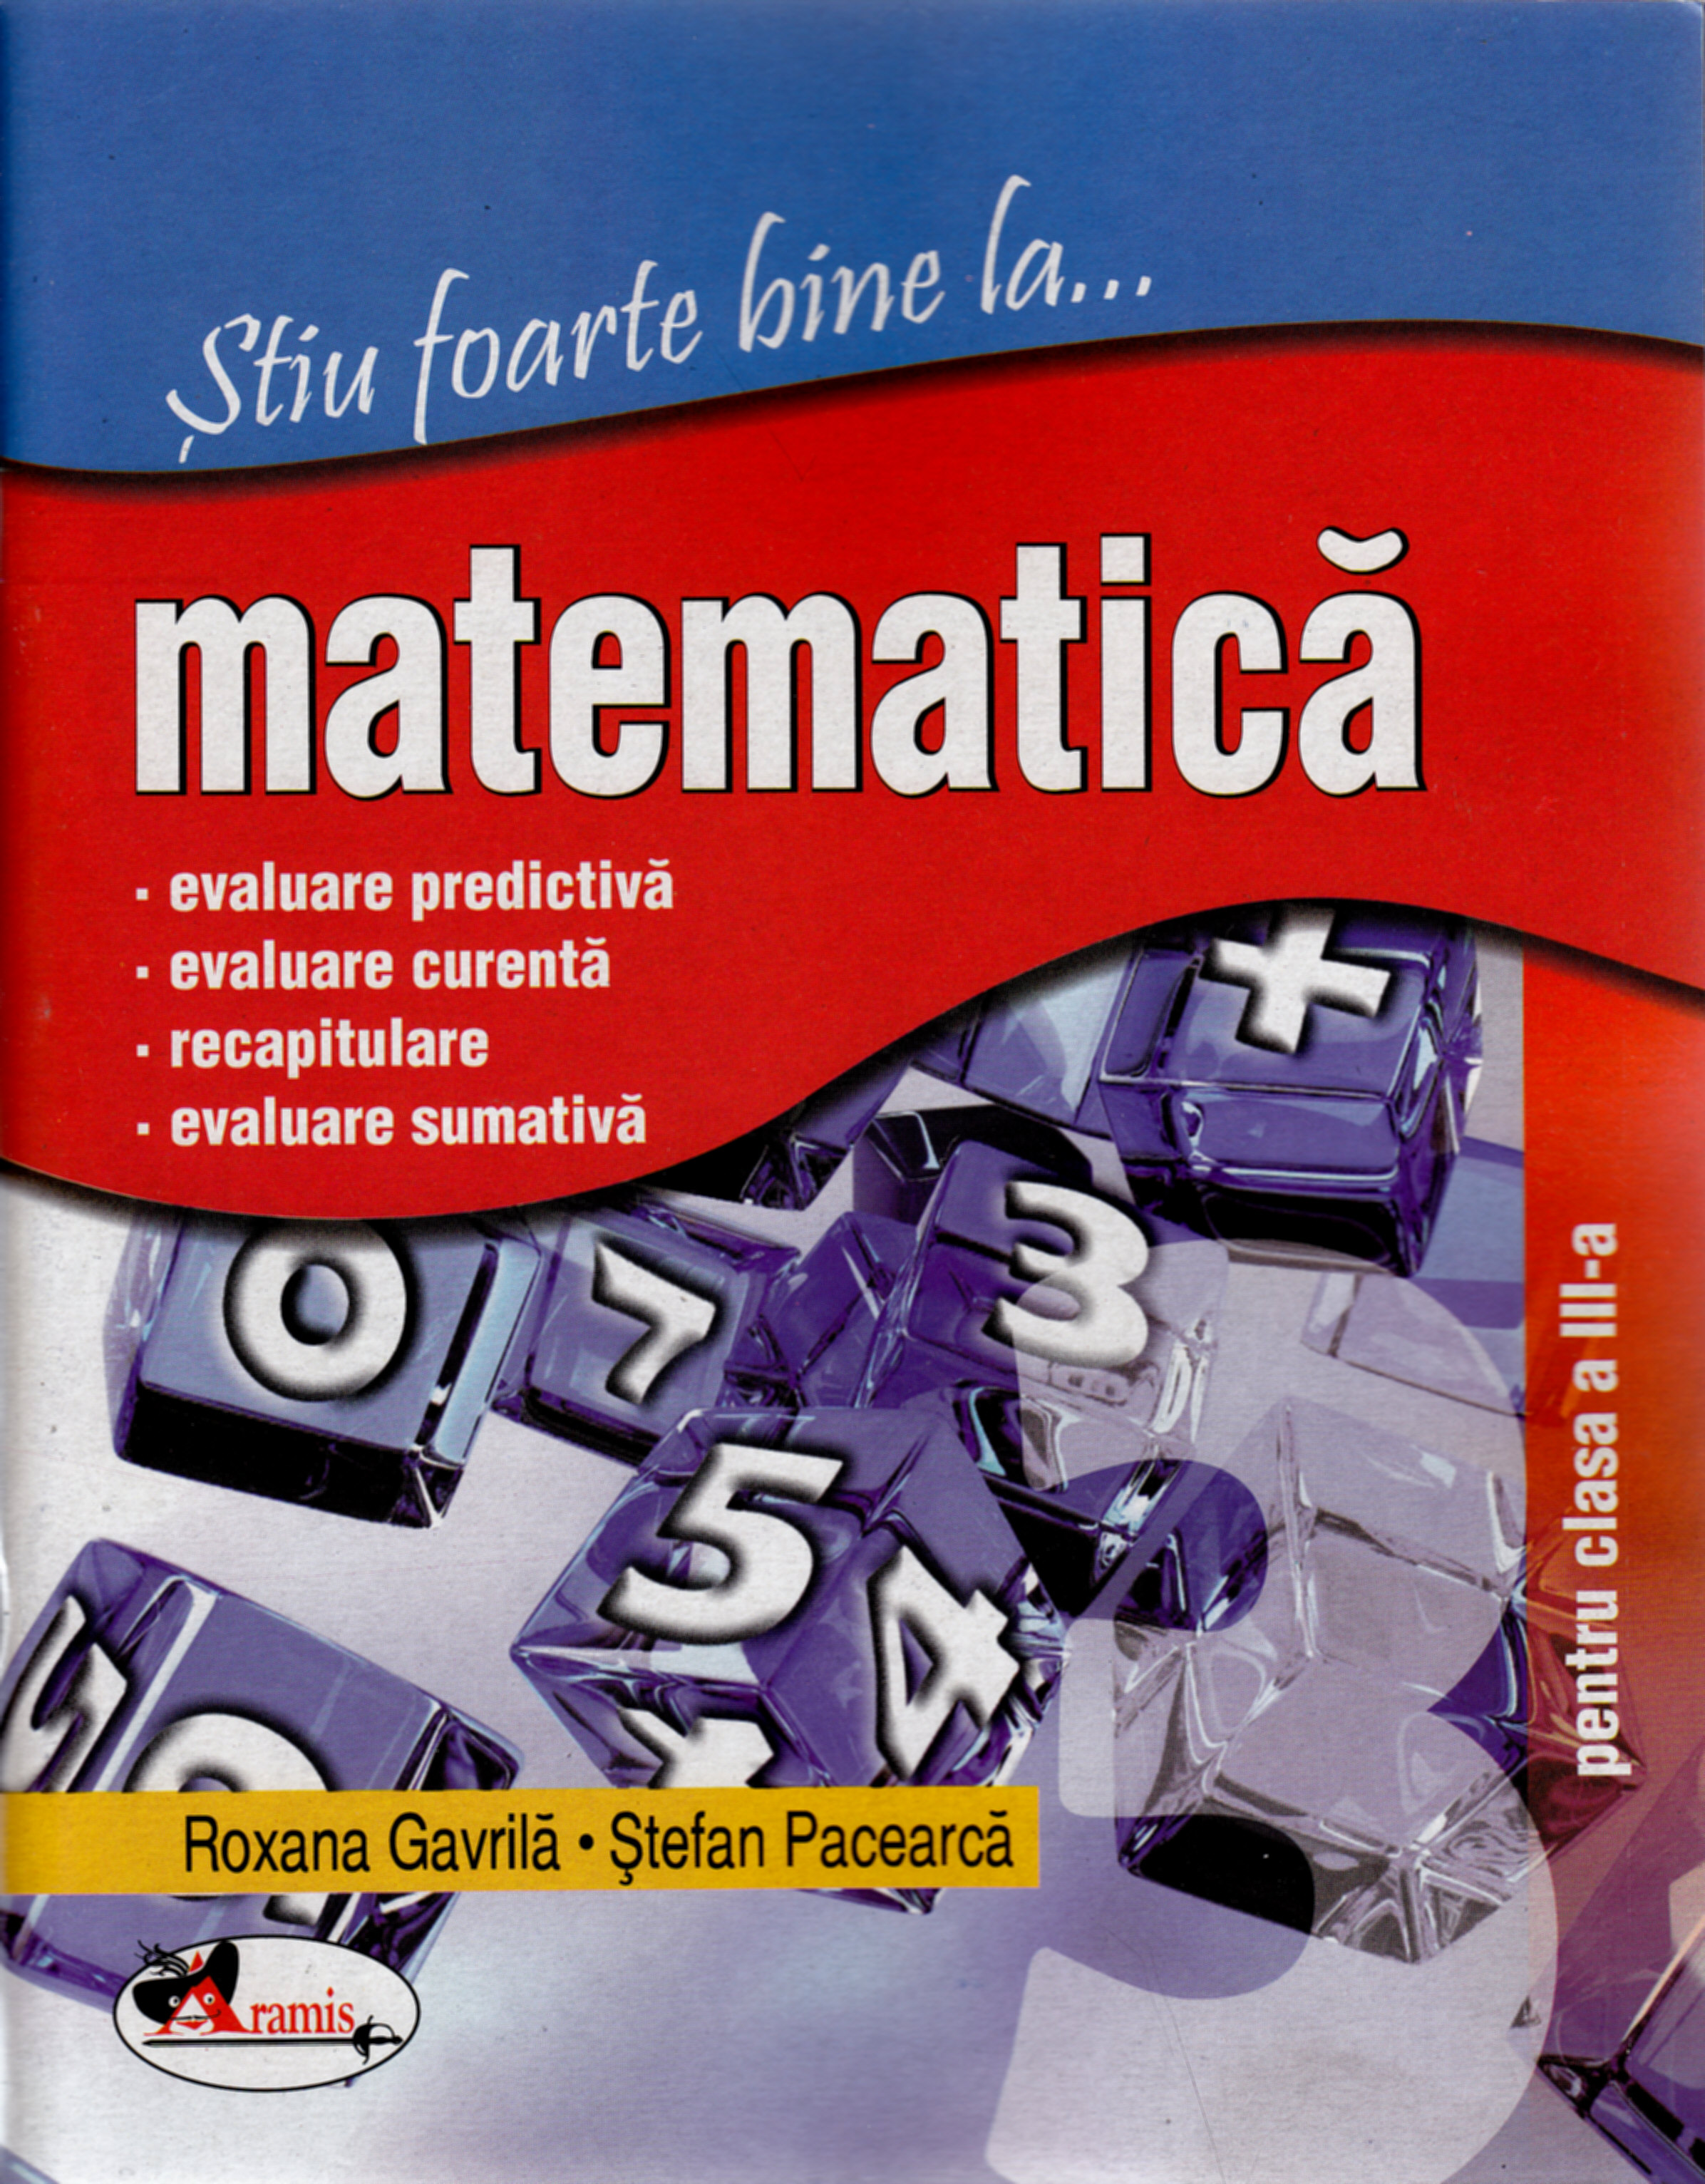 Stiu foarte bine la... Matematica clasa 3 - Roxana Gavrila, Stefan Pacearca